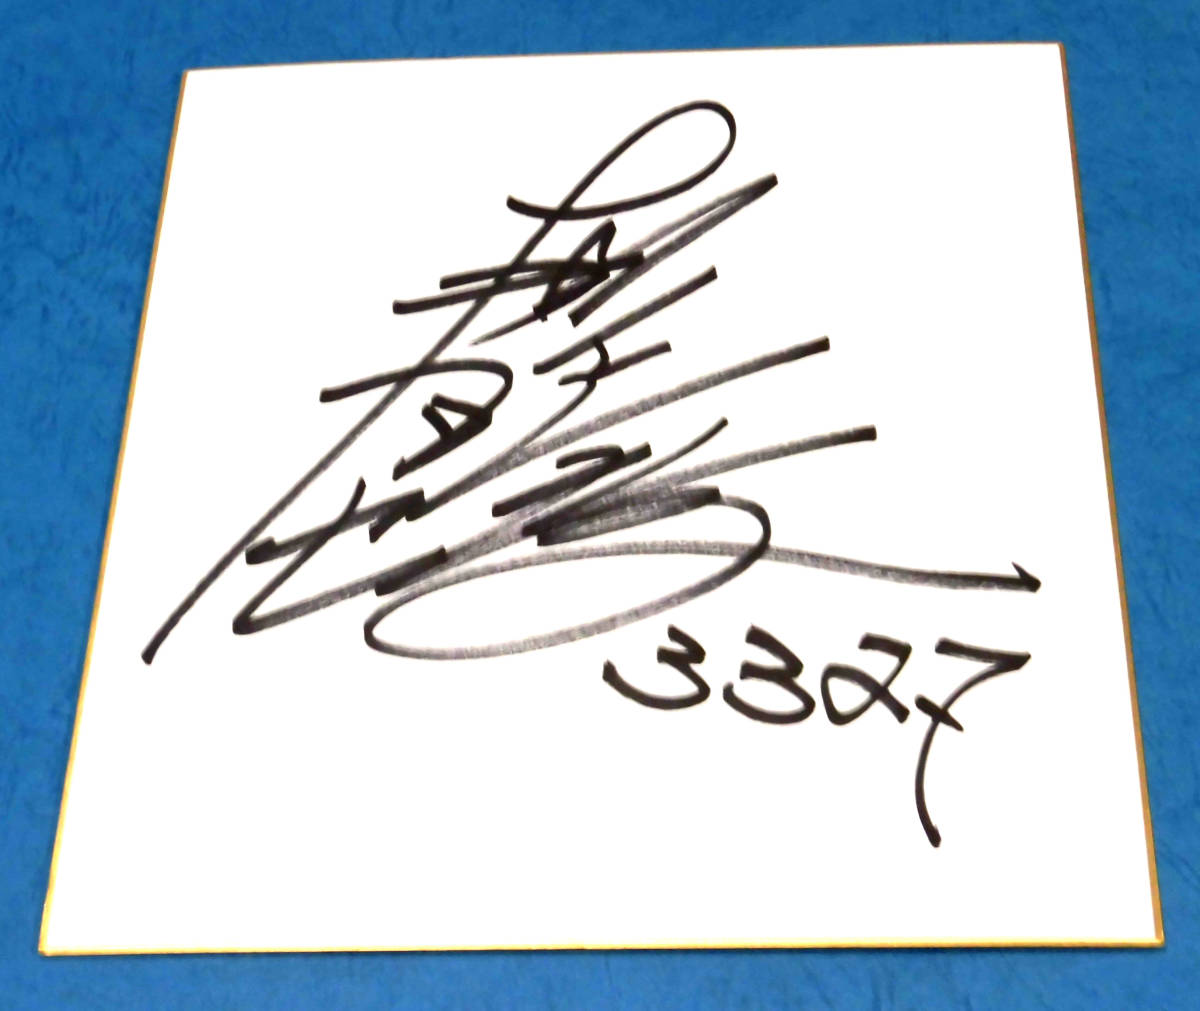 Гонка на лодках Масатака Нонагасе с автографом на цветной бумаге и футболка с автографом, чемпион гонок на лодках G1!!, виды спорта, досуг, Гонки на лодках, другие